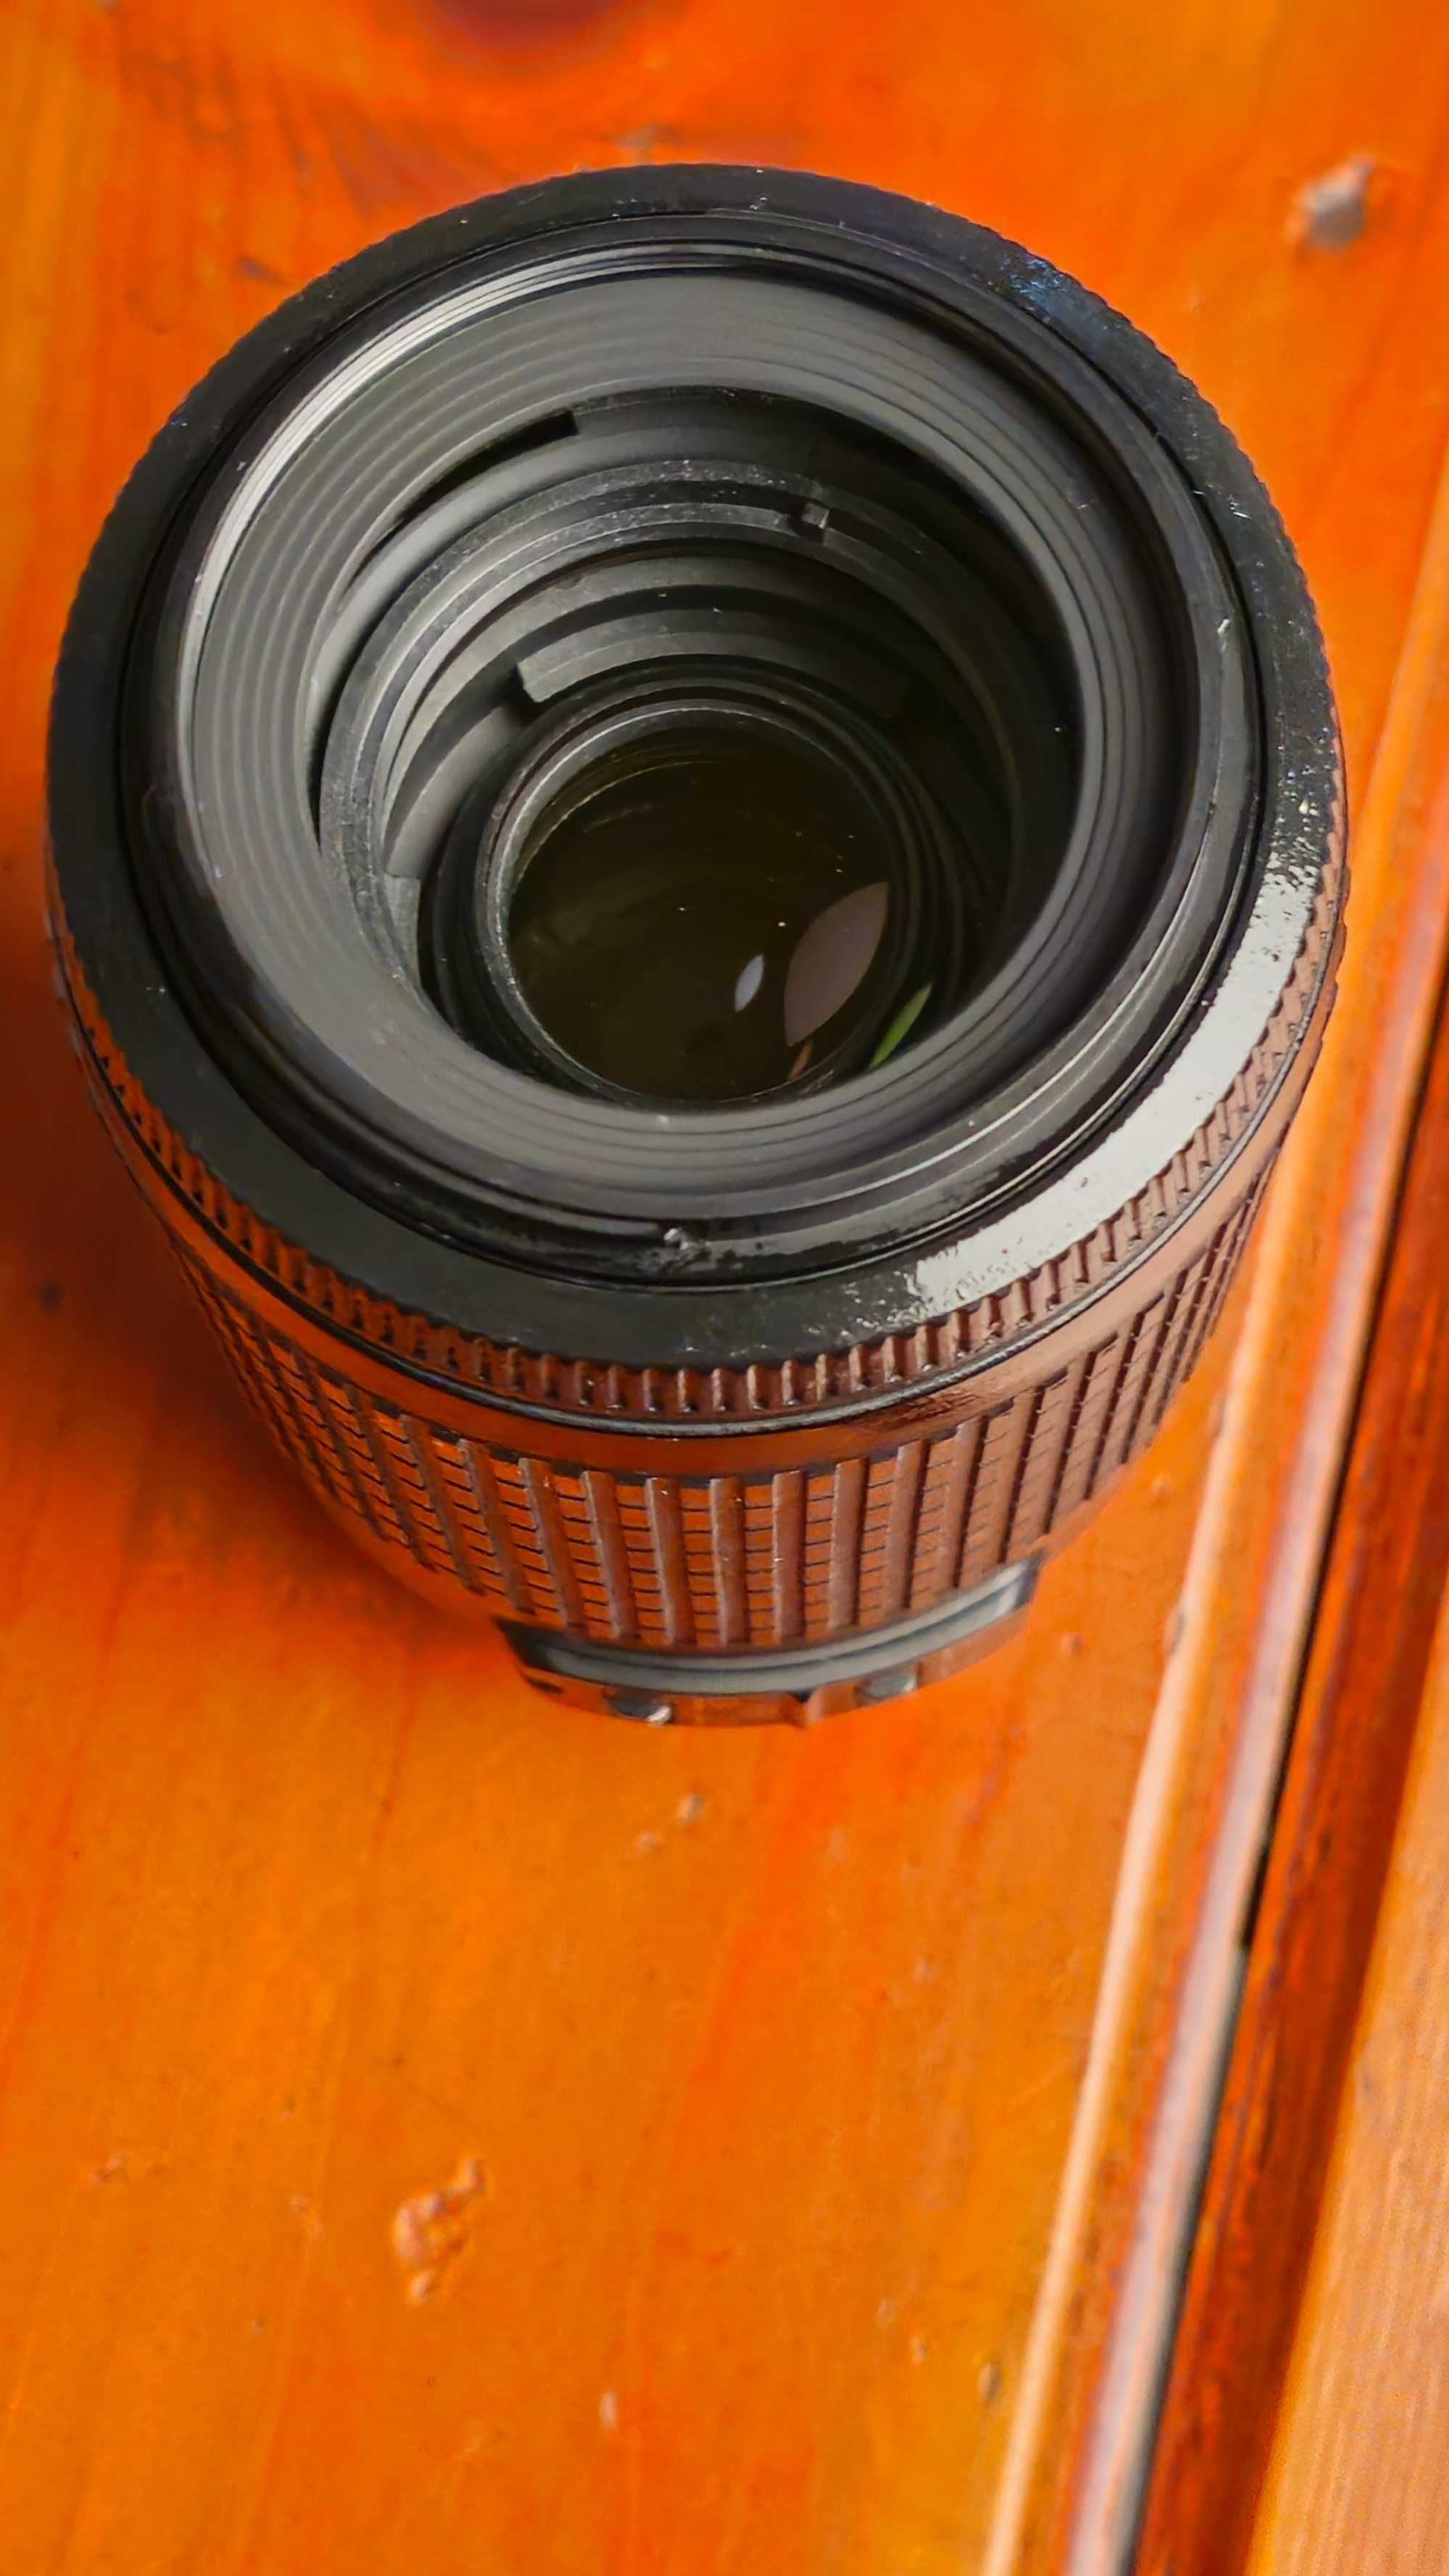 Nikon AF-S DX Zoom-Nikkor 55-200mm f/4-5.6G ED VR